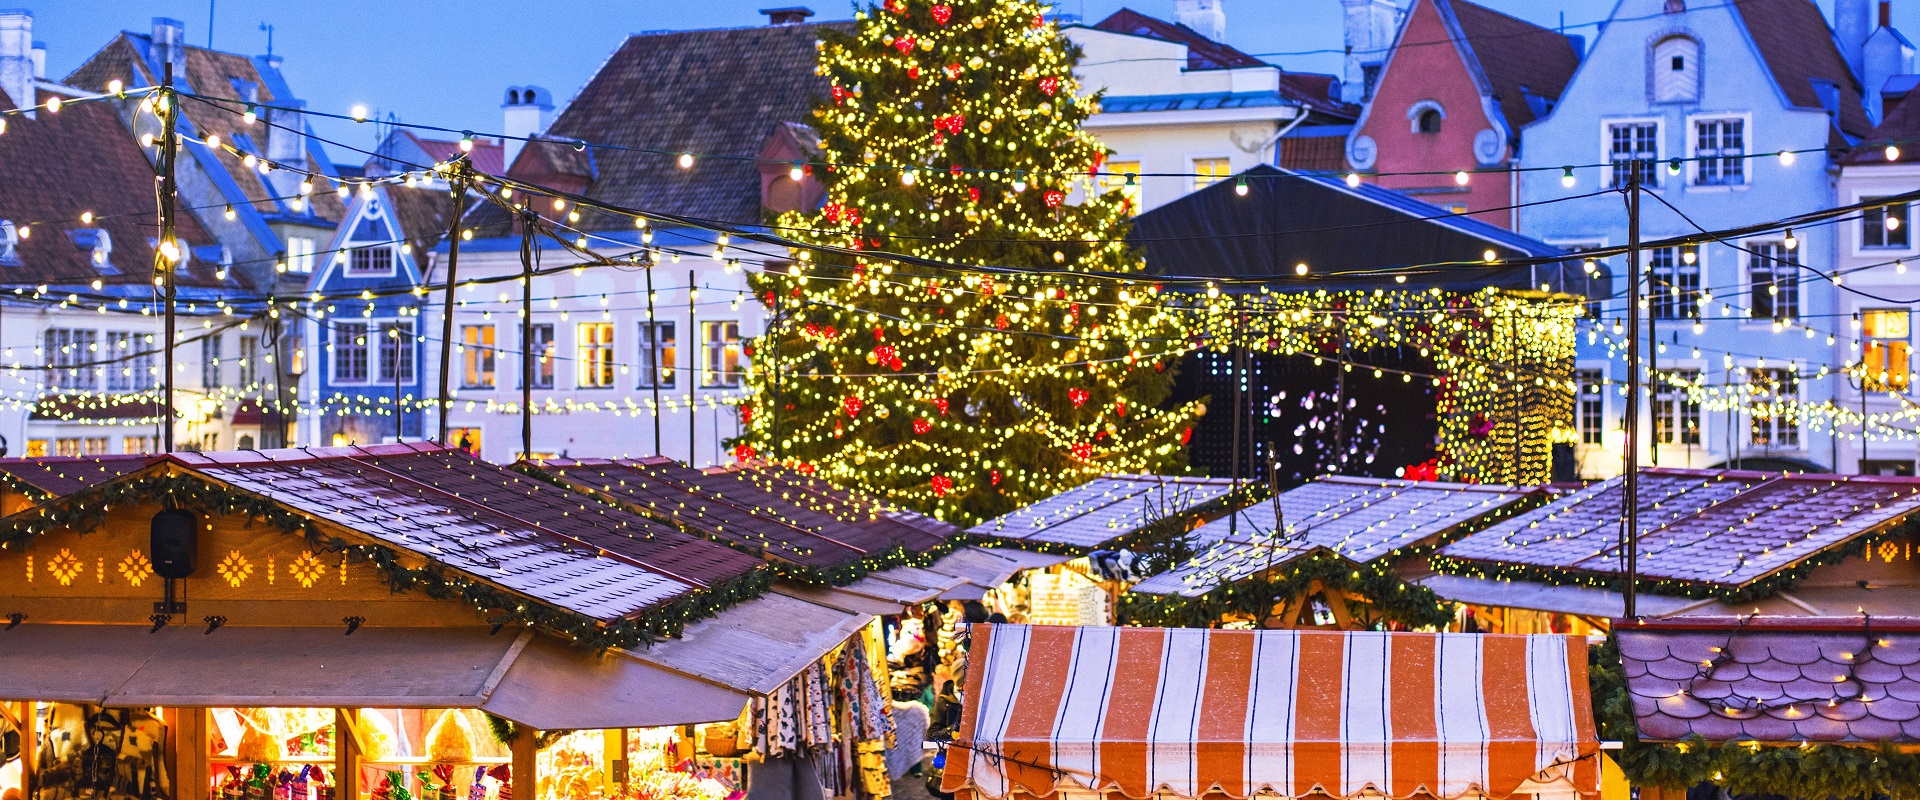 Christmas market in Talinn, Estonia.